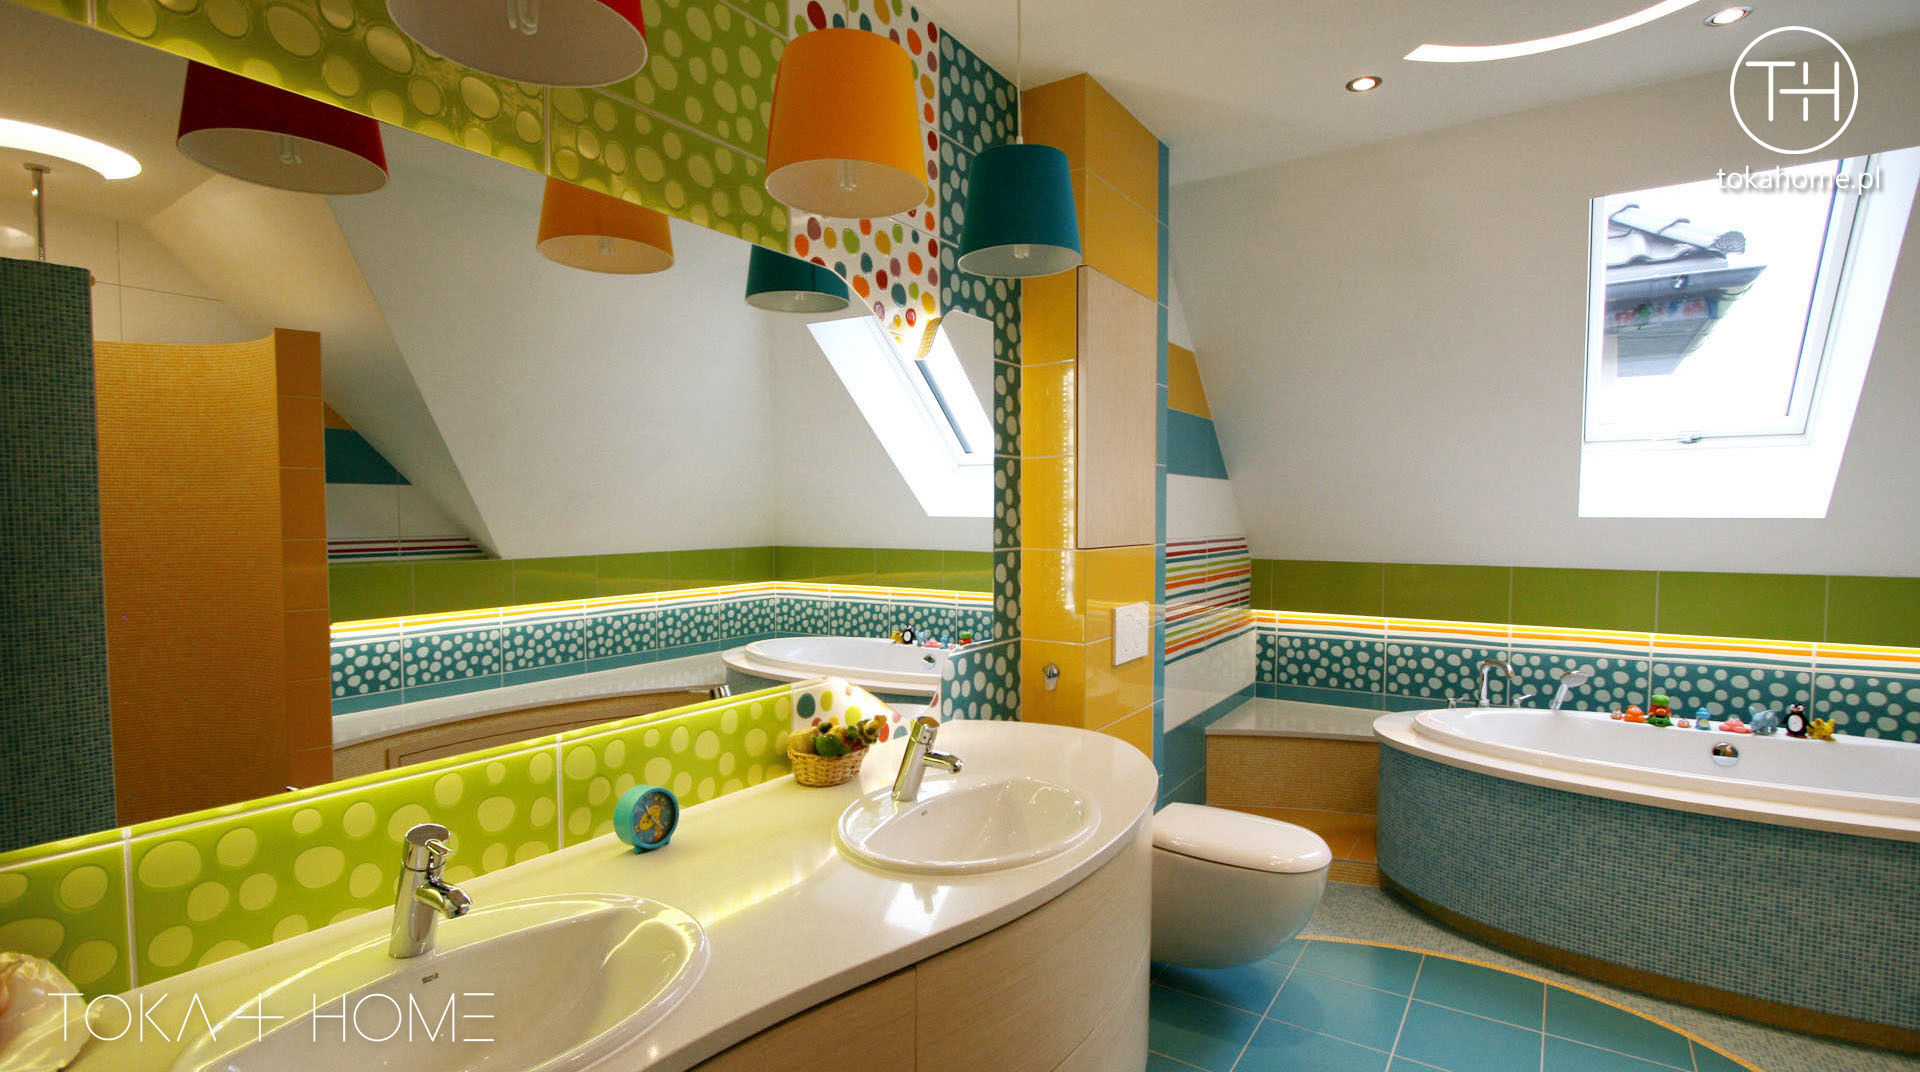 Zaczarowany świat - łazienka dla dzieci, TOKA + HOME TOKA + HOME Modern bathroom Ceramic